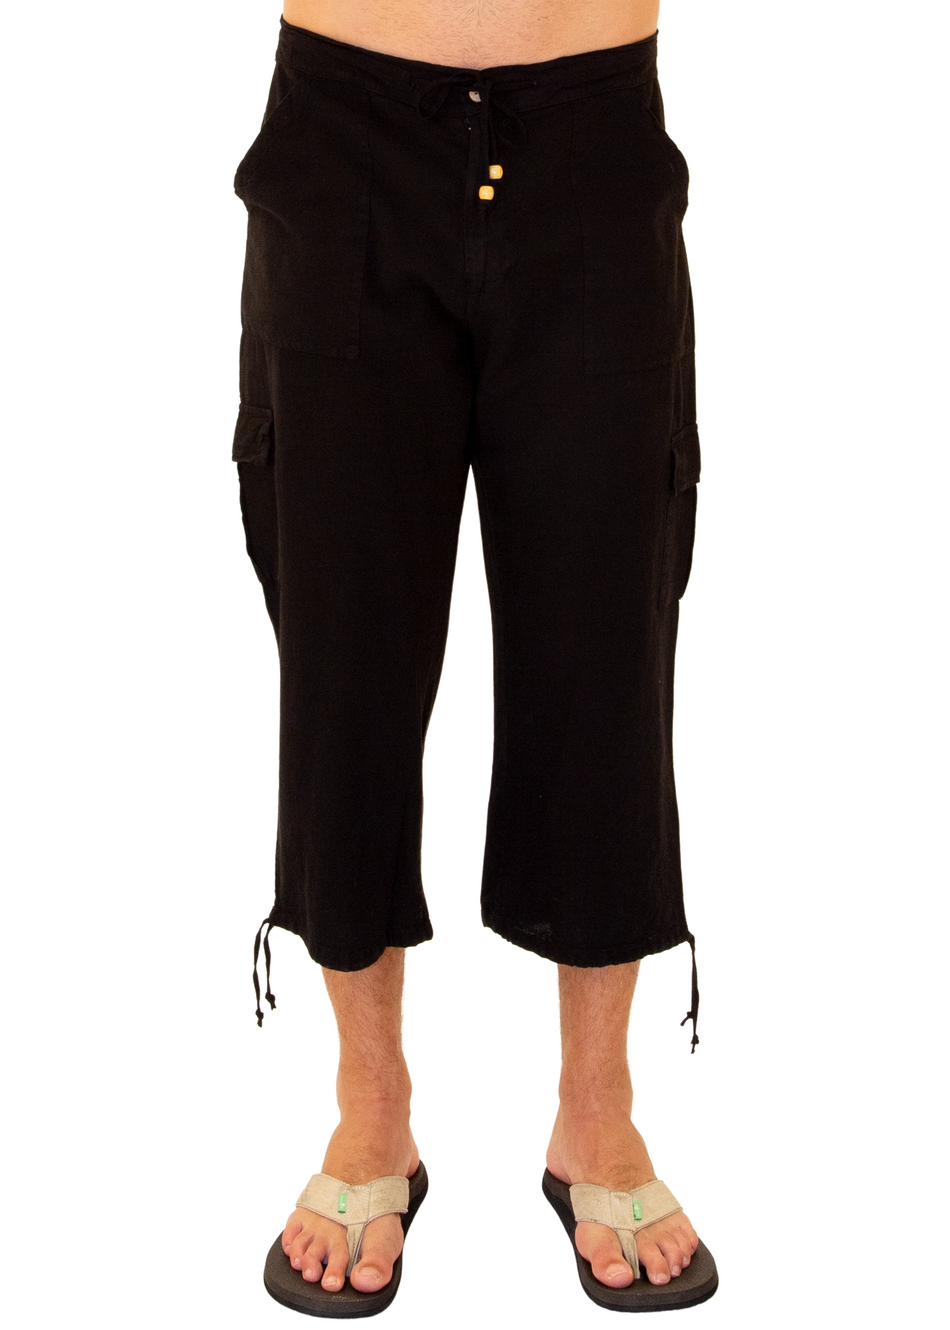 Neubrian Men's Extra Long Cargo Shorts 3/4 Capri Pants Army Green Size 30 |  Amazon.com